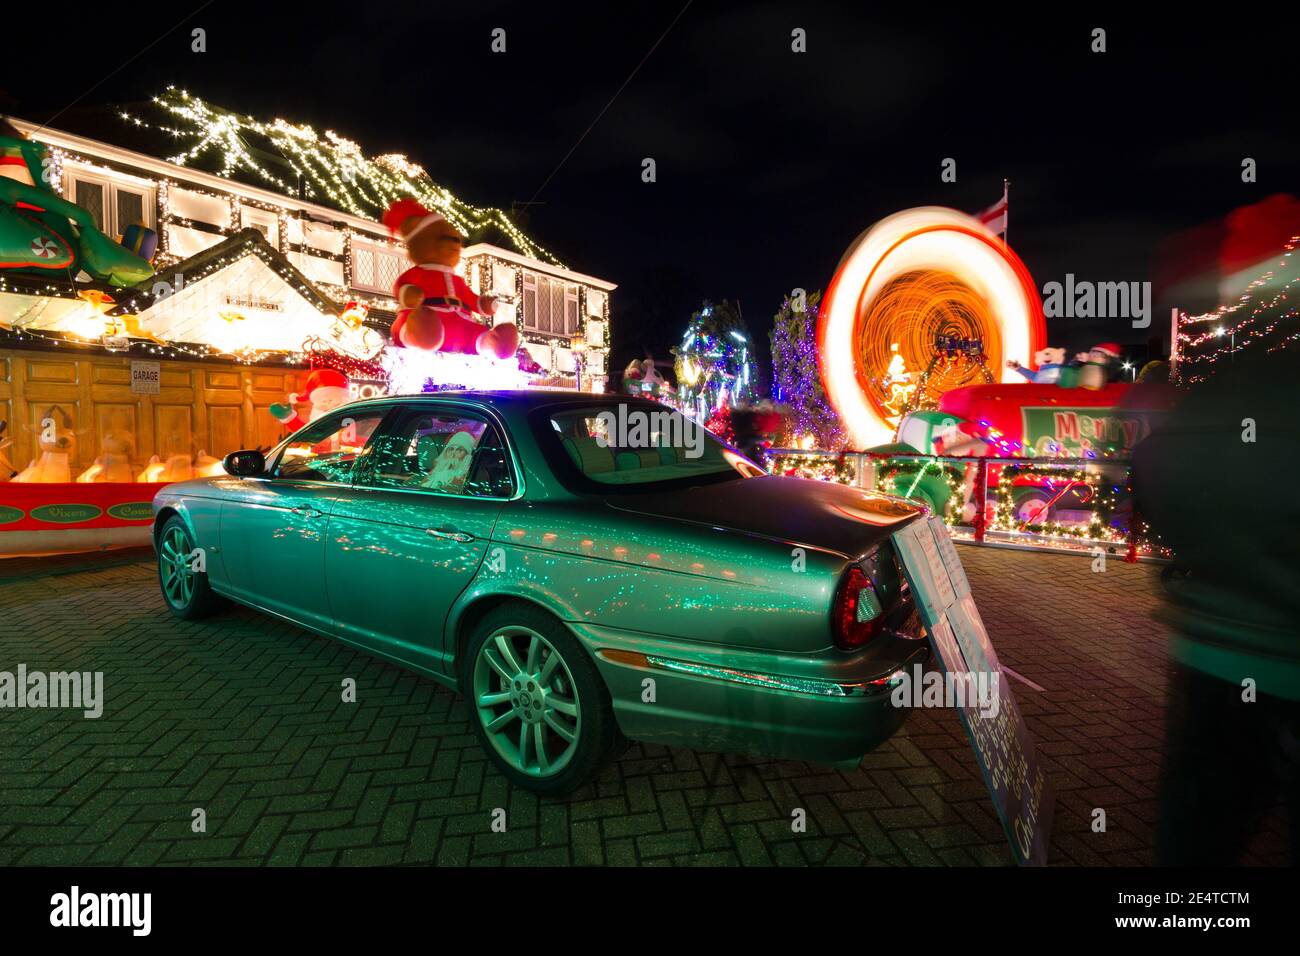 Familienauto leuchtet mit Weihnachtsbeleuchtung vor einem Haus In Bromley London Stockfoto